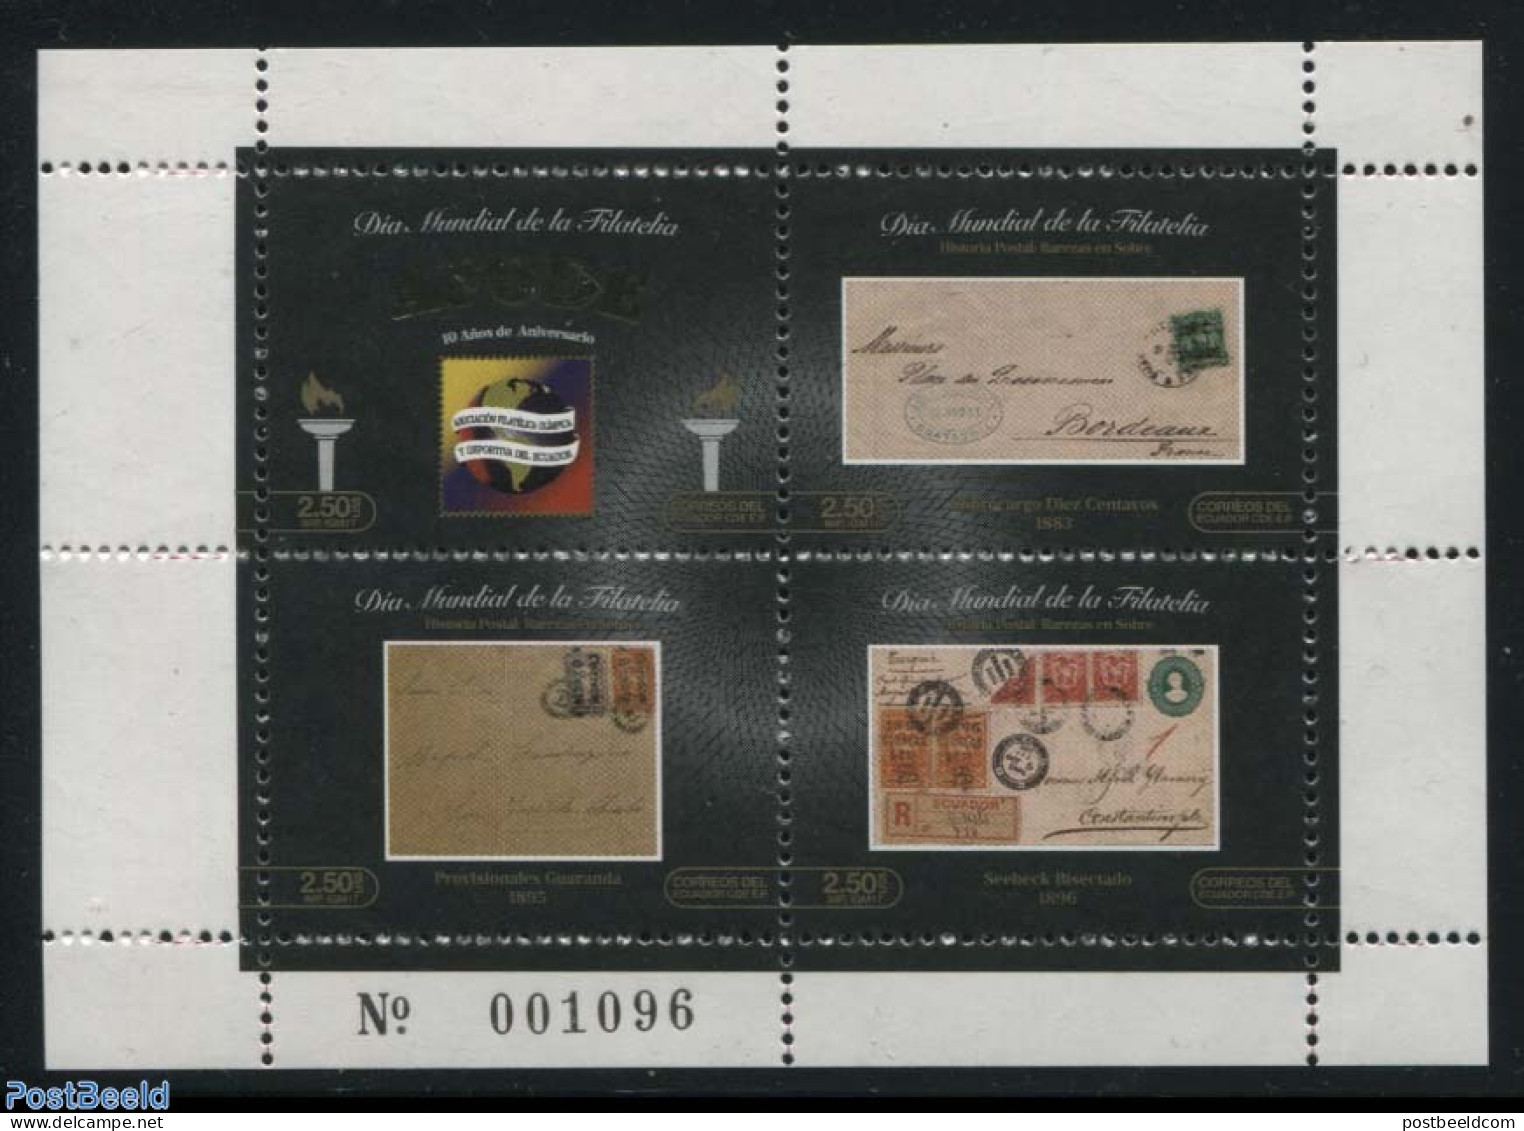 Ecuador 2017 AFODE, Philately 4v M/s, Mint NH, Philately - Stamps On Stamps - Postzegels Op Postzegels